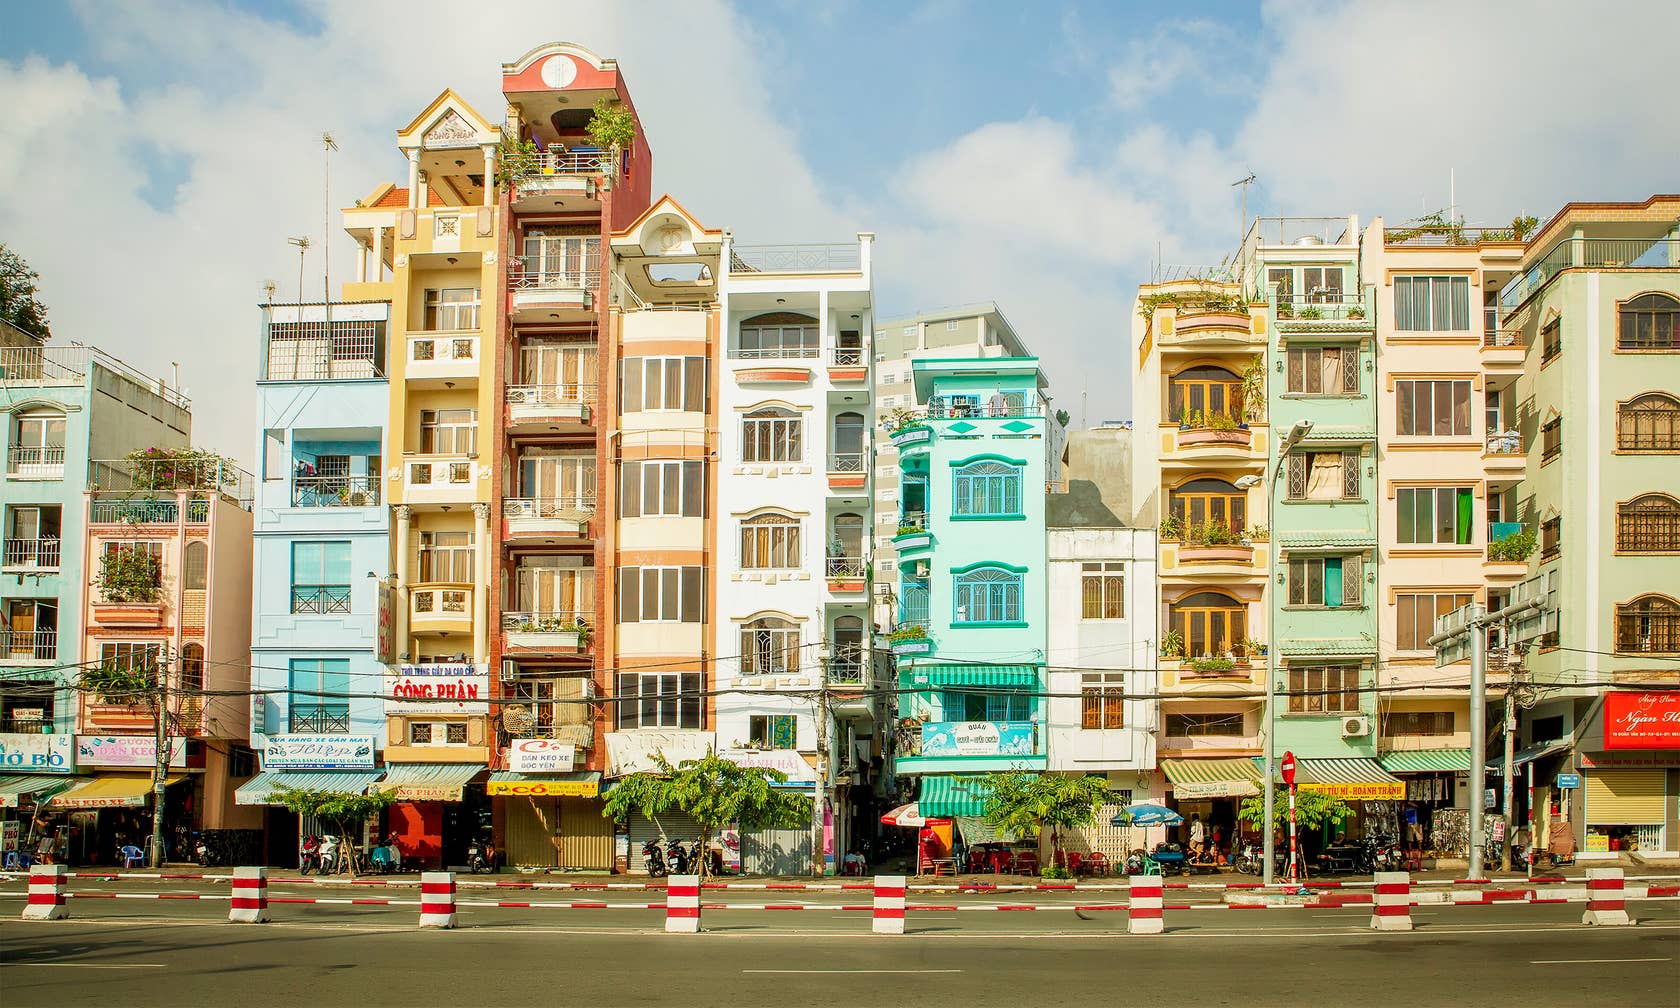 Bérbeadó nyaralók itt: Ho Si Minh-város